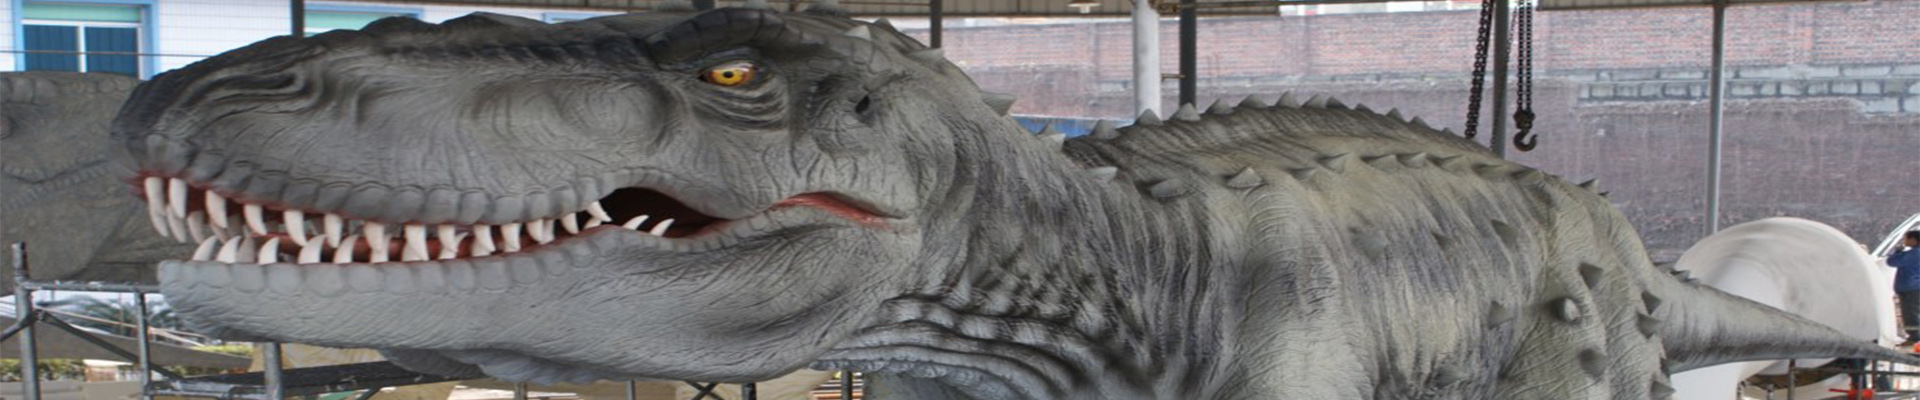 【恐龙景观】 自贡市恐龙景观艺术有限公司荣获《自贡市第二批对外文化贸易优秀企业》称号